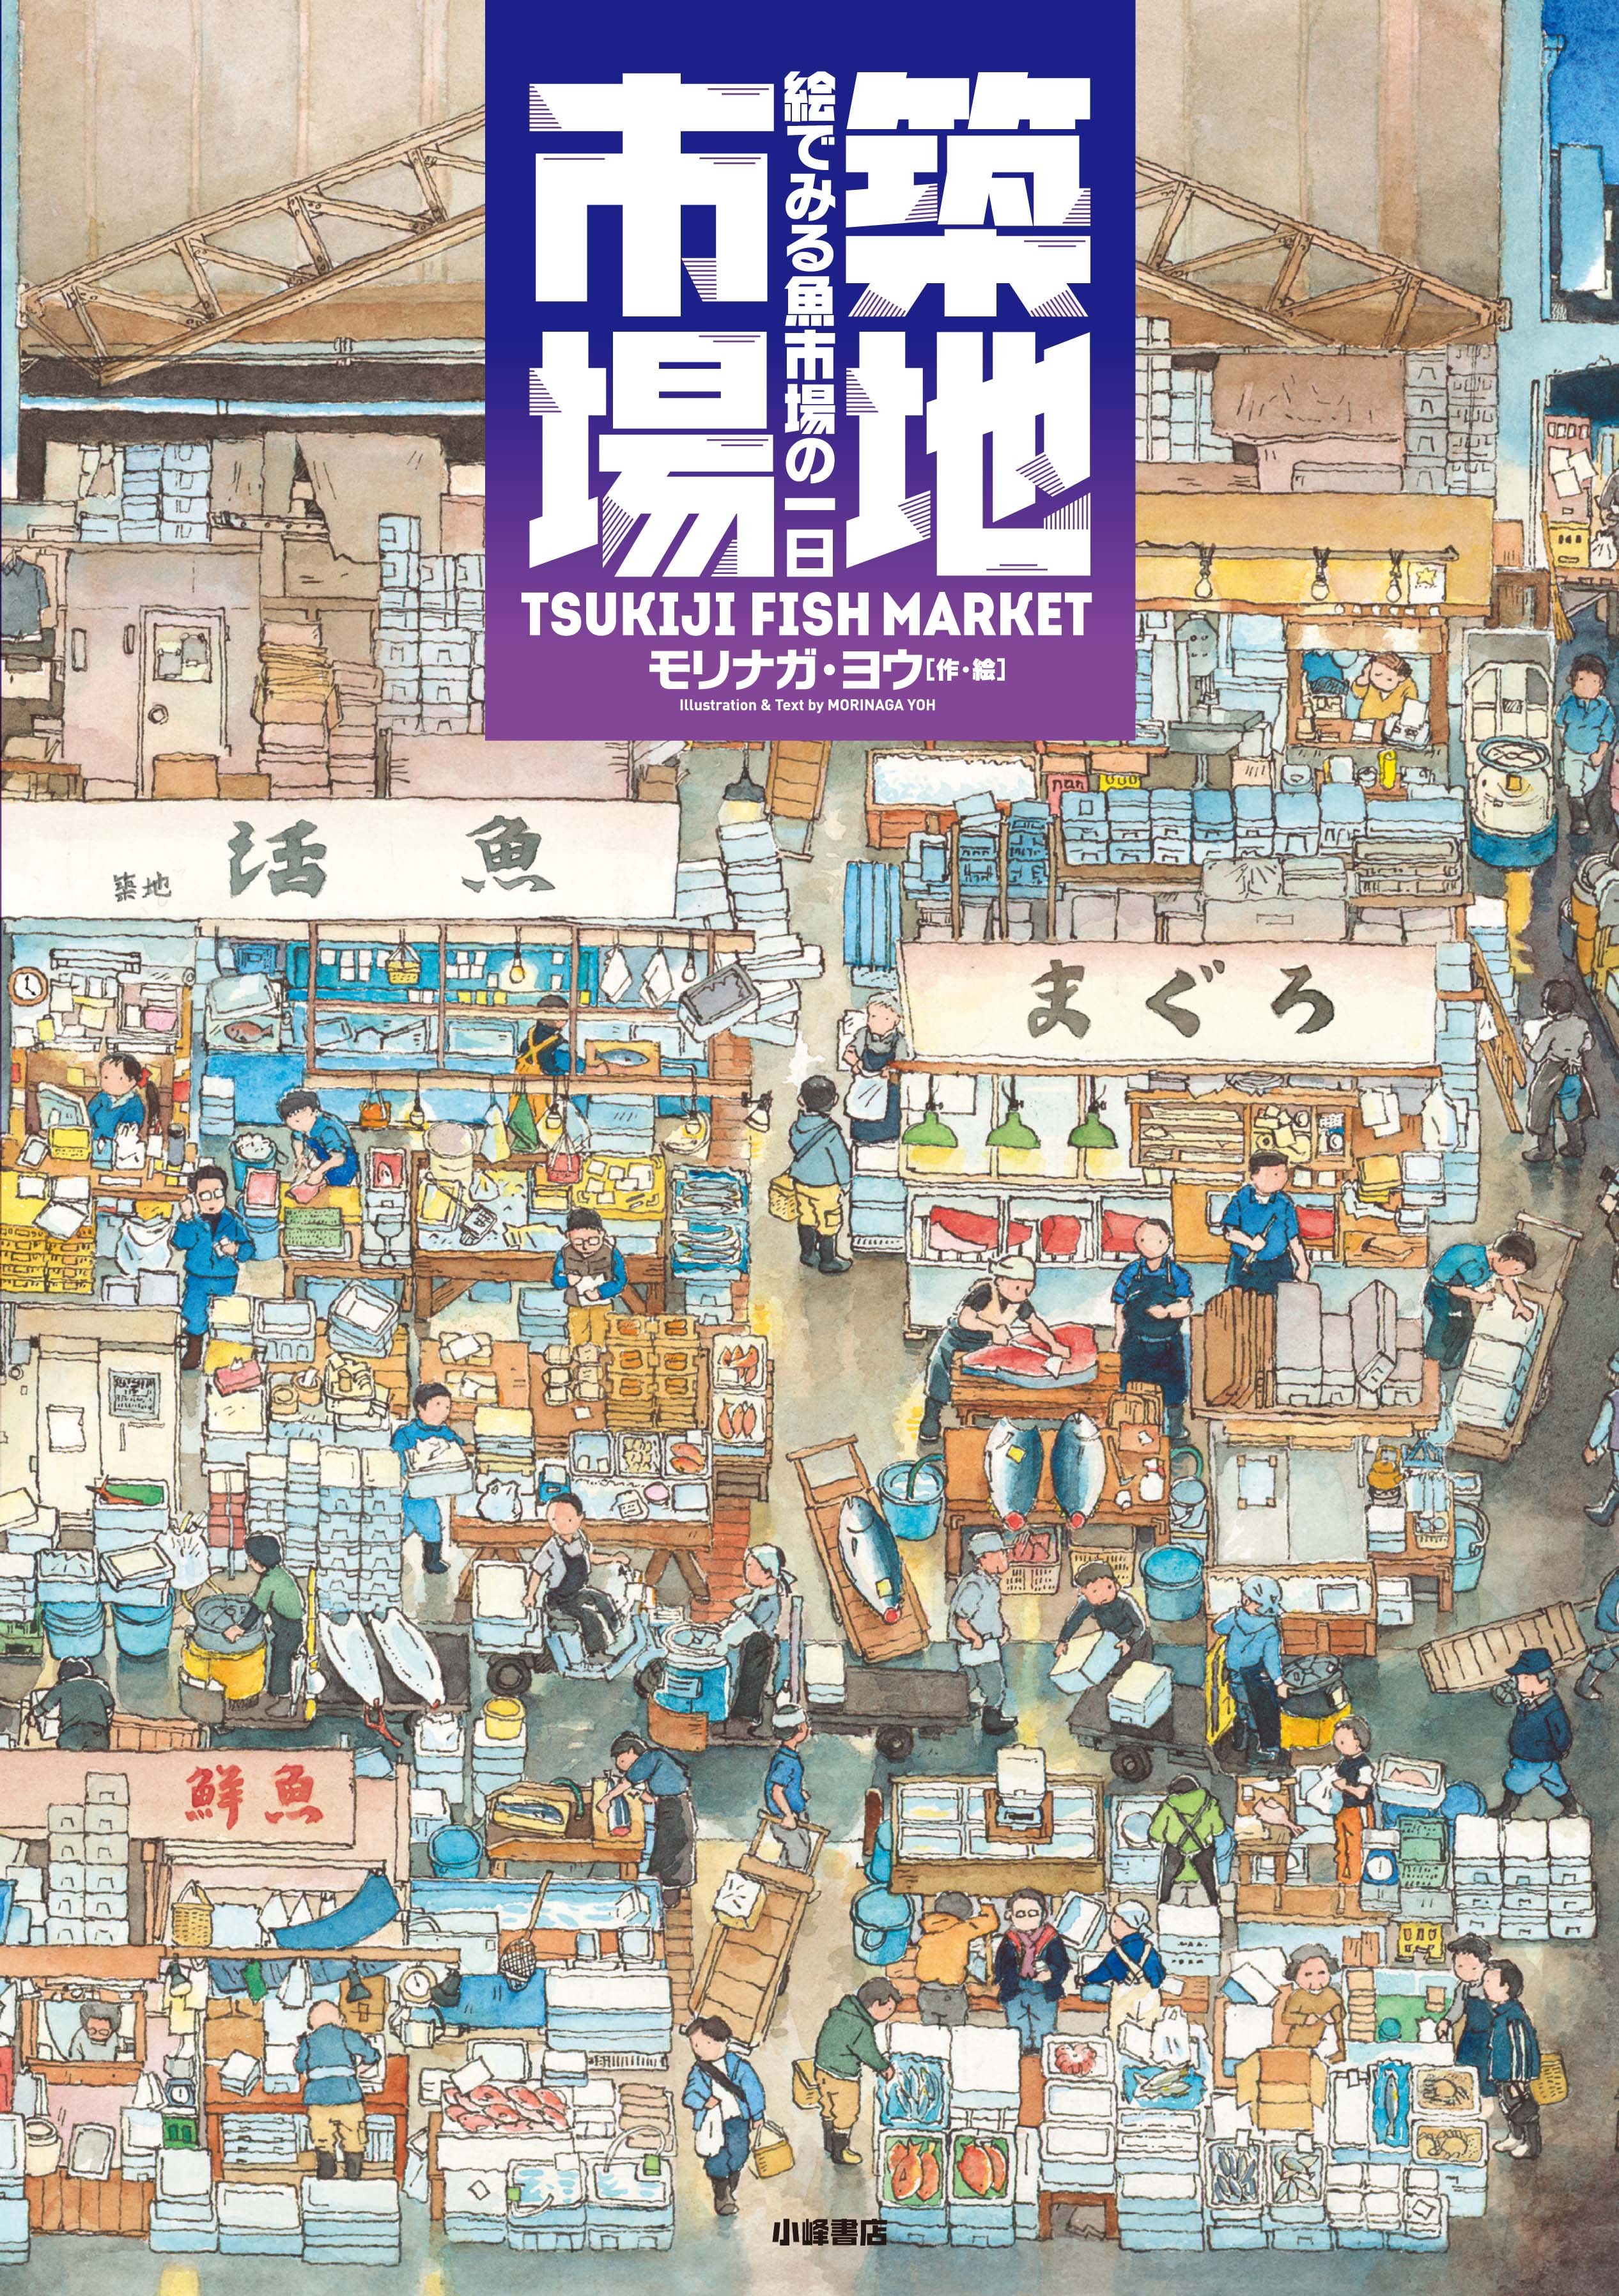 築地市場 絵でみる魚市場の一日 日本版スターウォーズか Honz